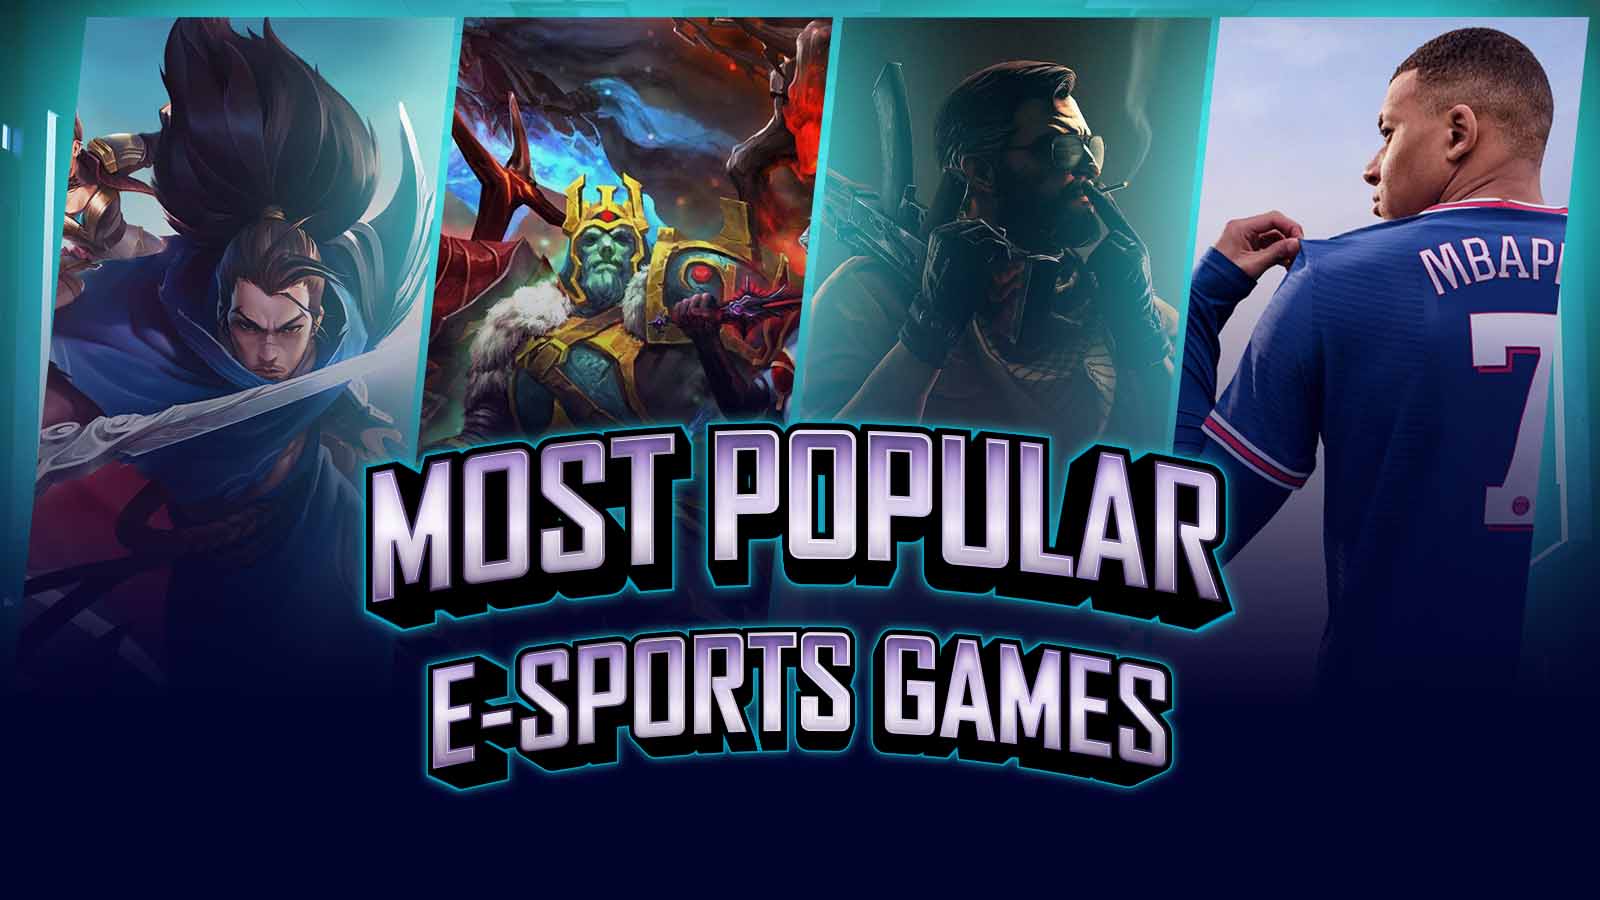 Most popular esports games